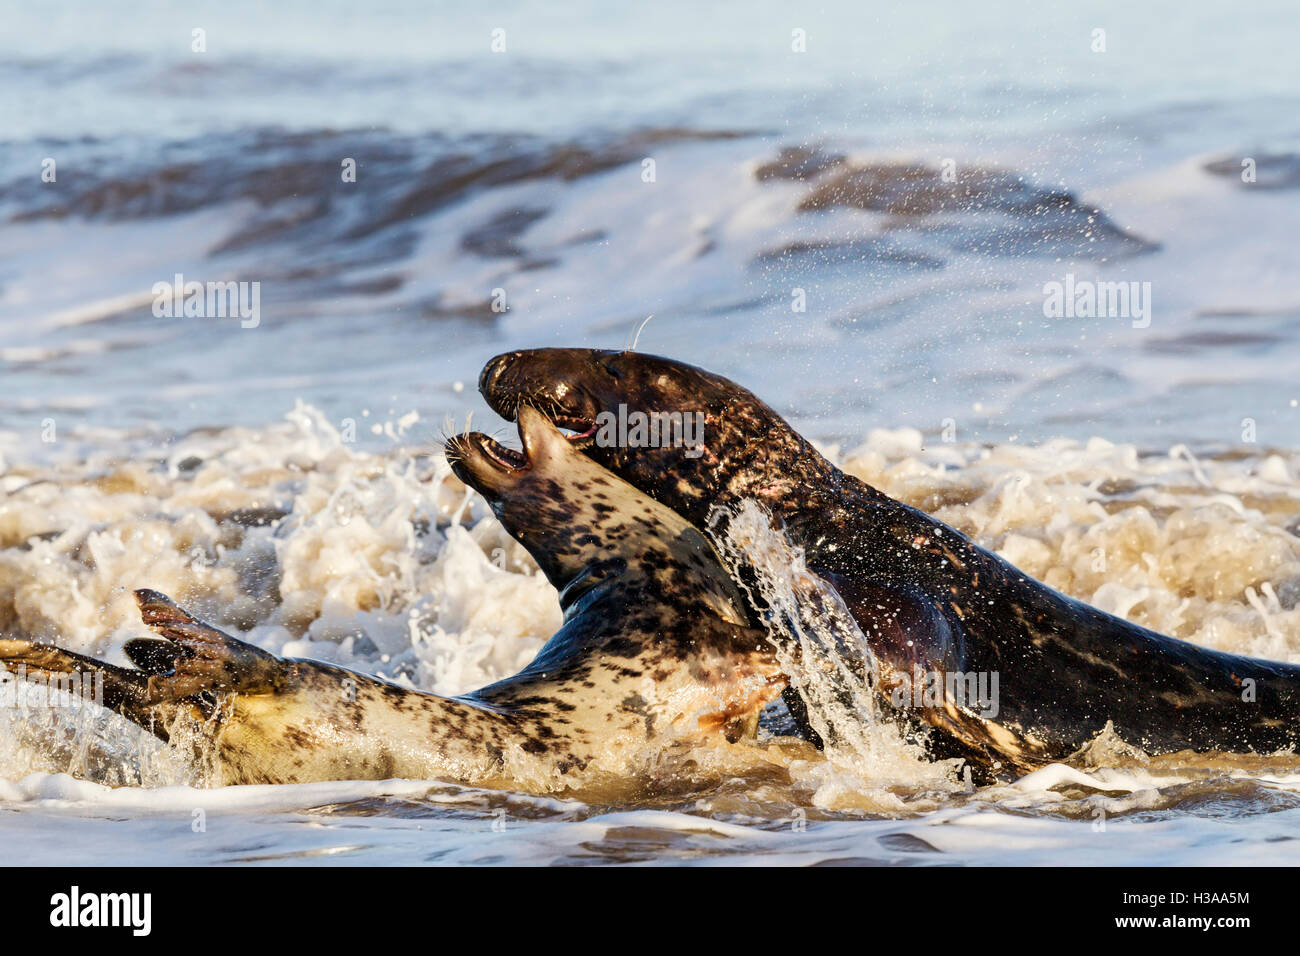 Grey seal courtship behaviour, North Sea coast, Norfolk, England Stock Photo